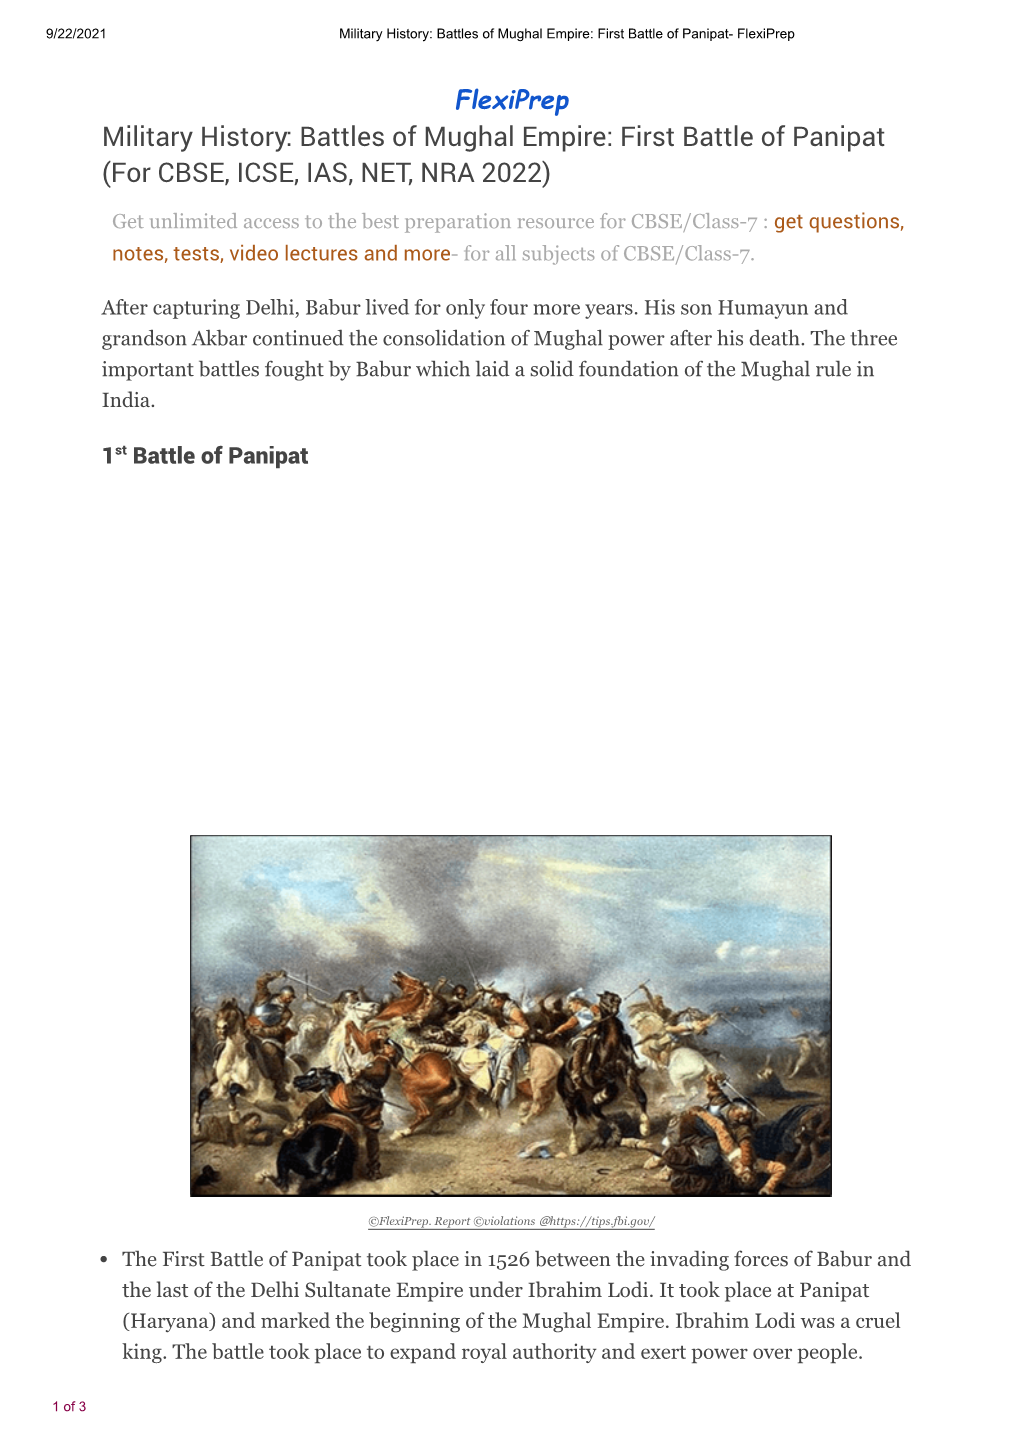 Battles of Mughal Empire: First Battle of Panipat- Flexiprep